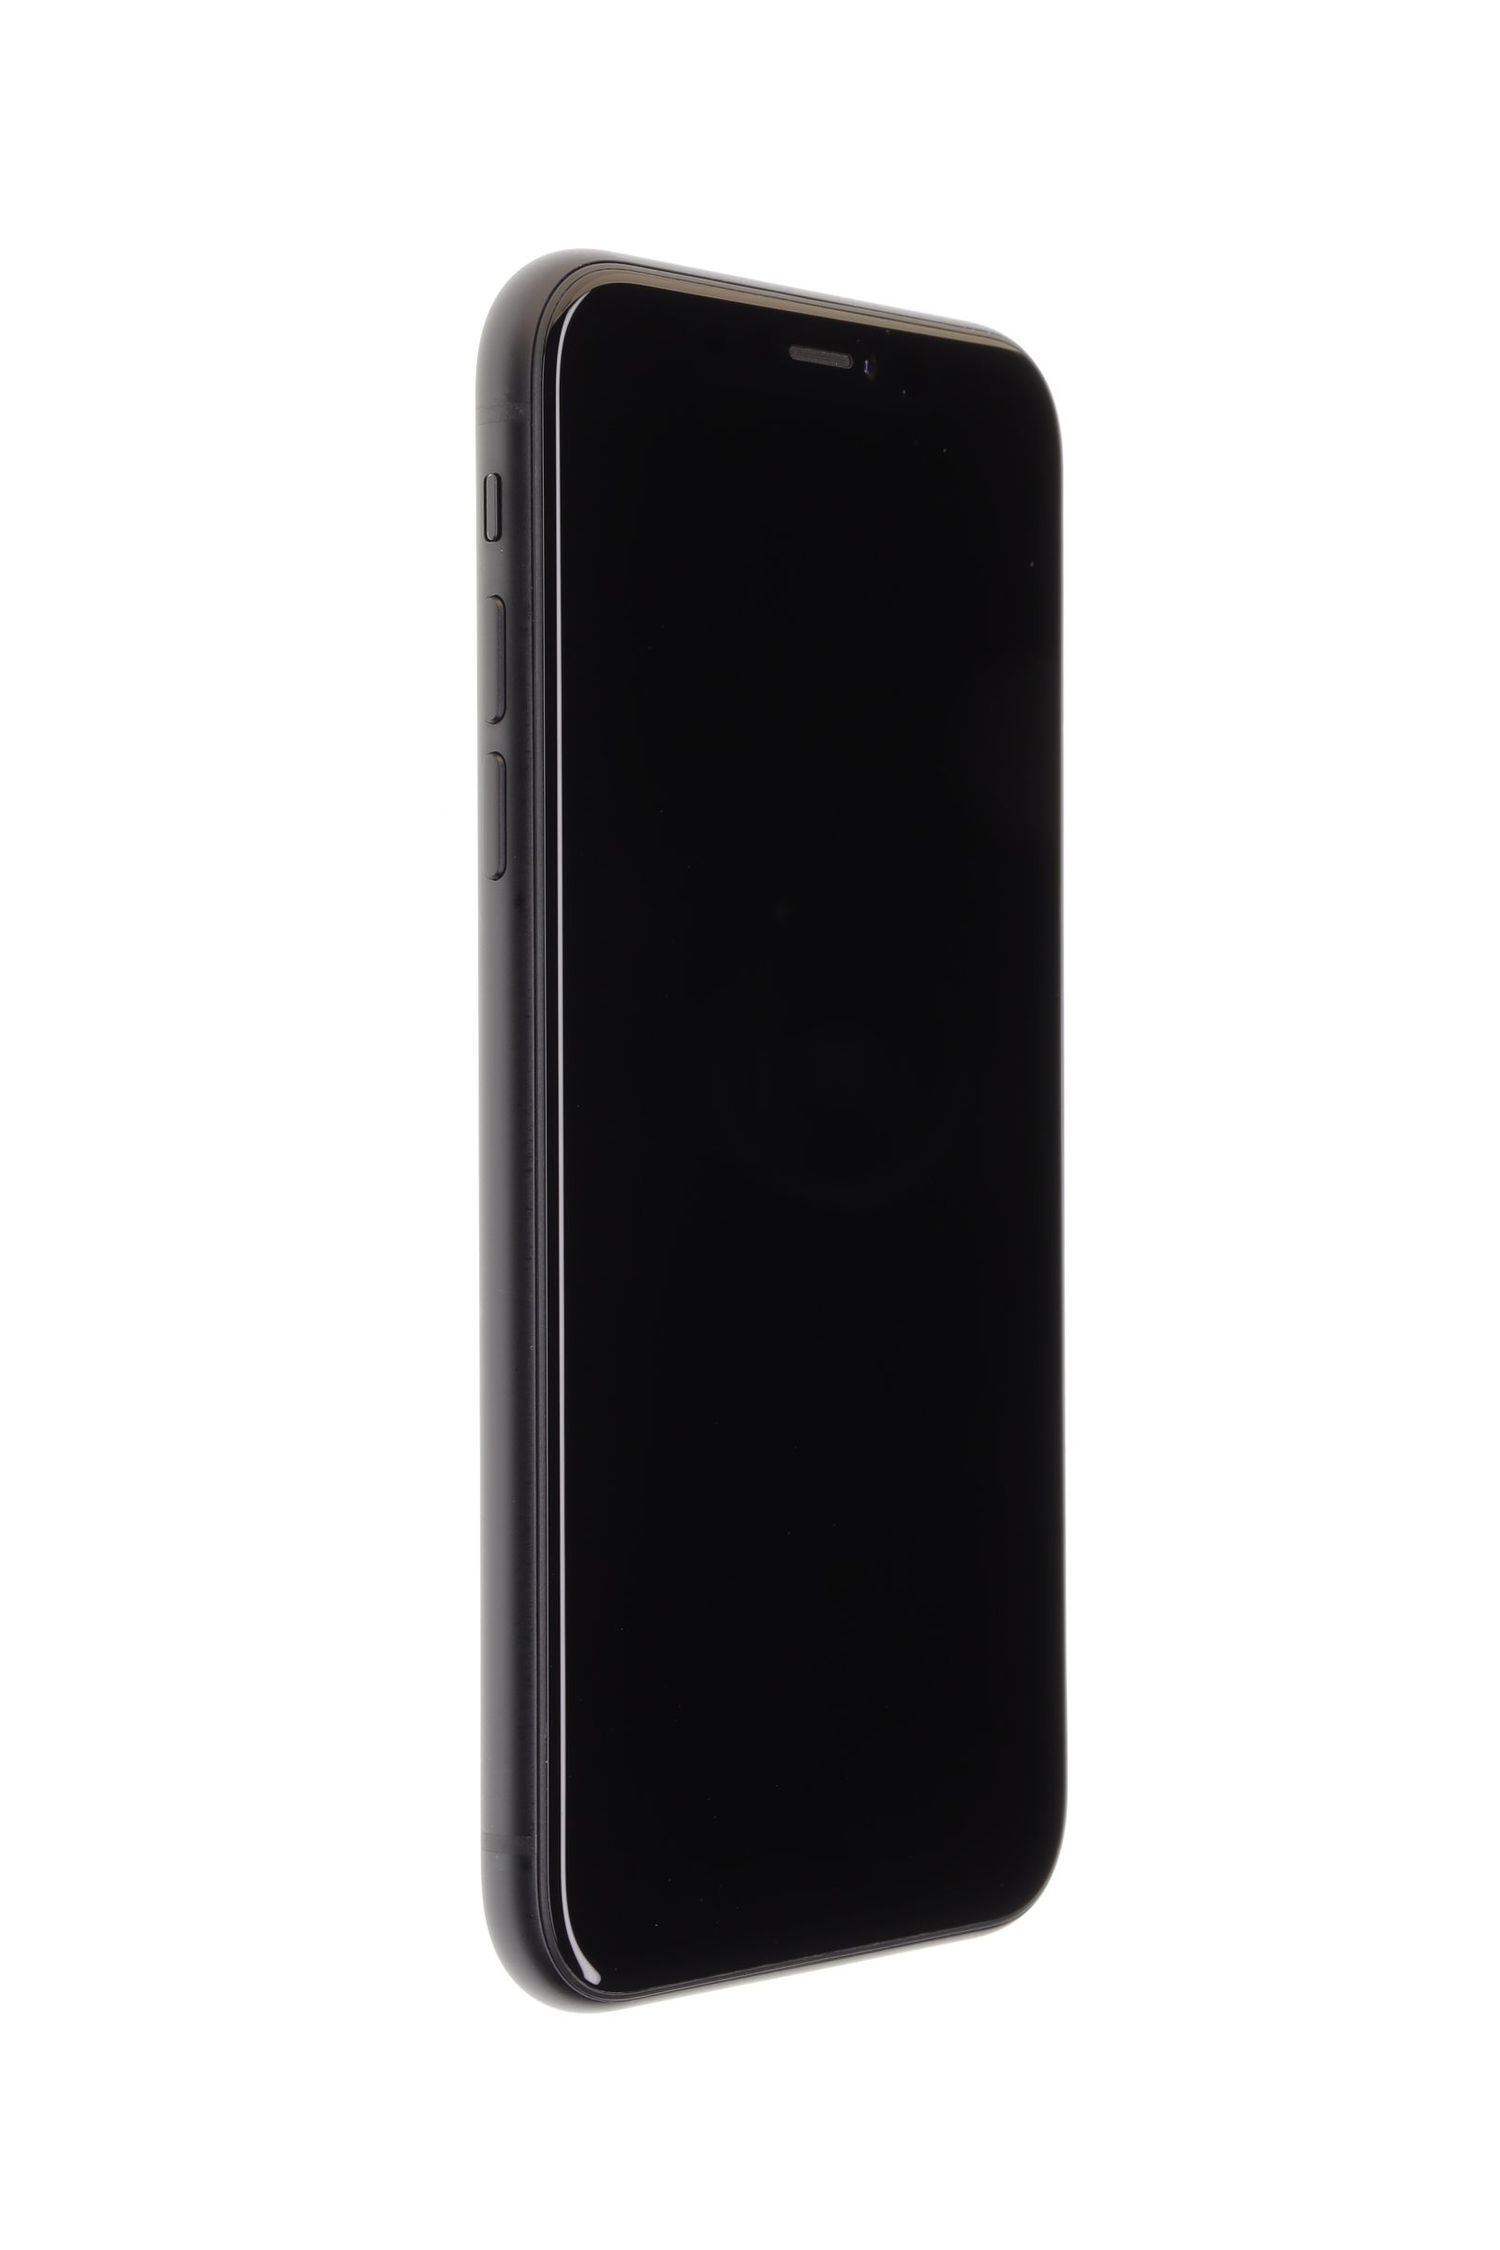 Mobiltelefon Apple iPhone XR, Black, 128 GB, Foarte Bun